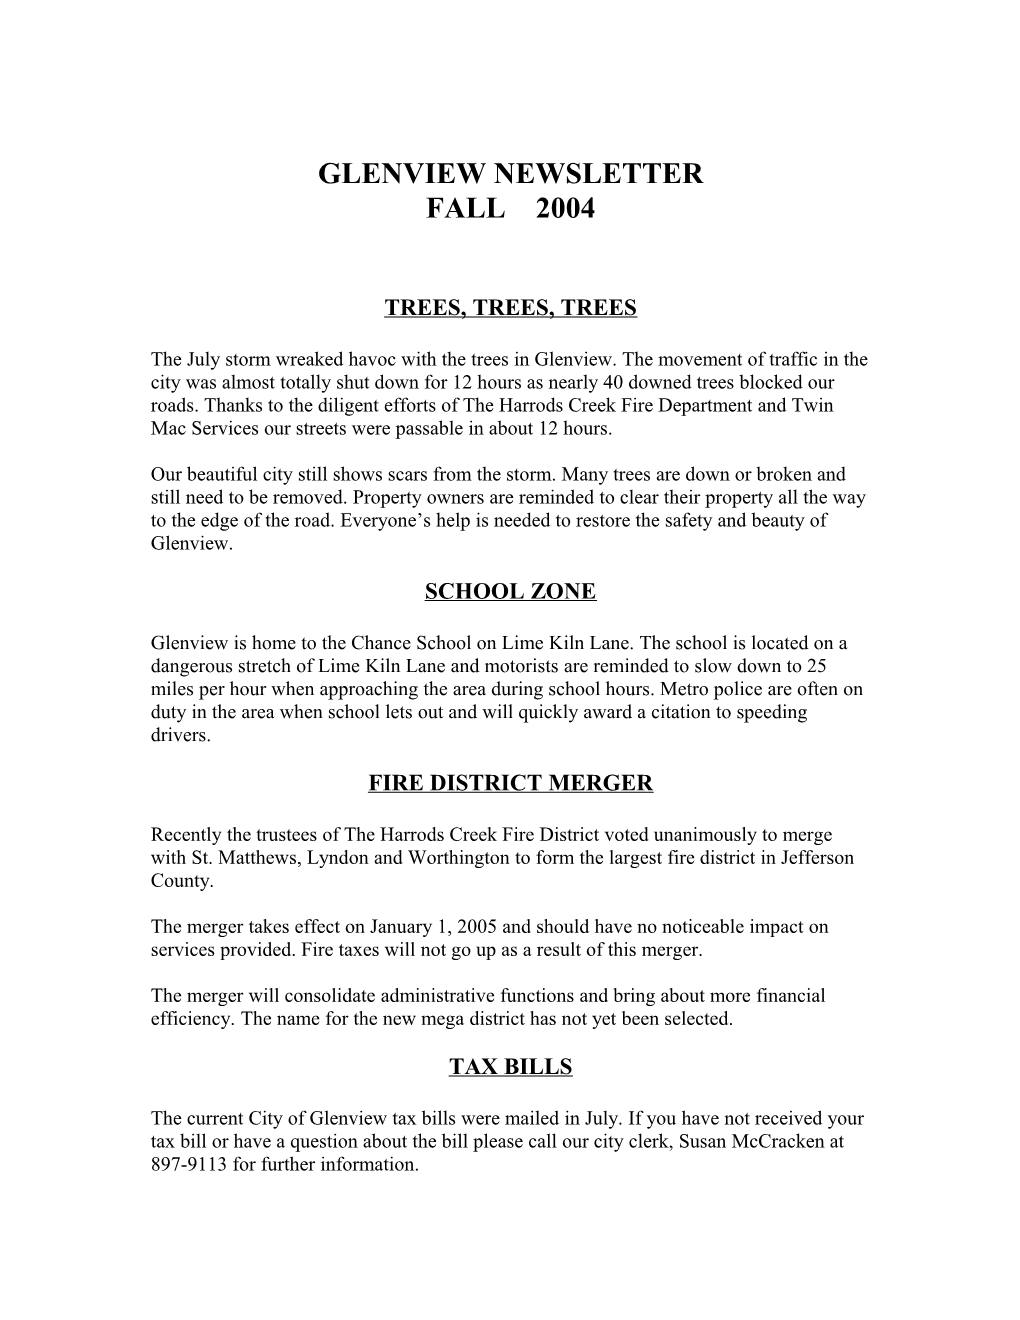 Glenview Newsletter